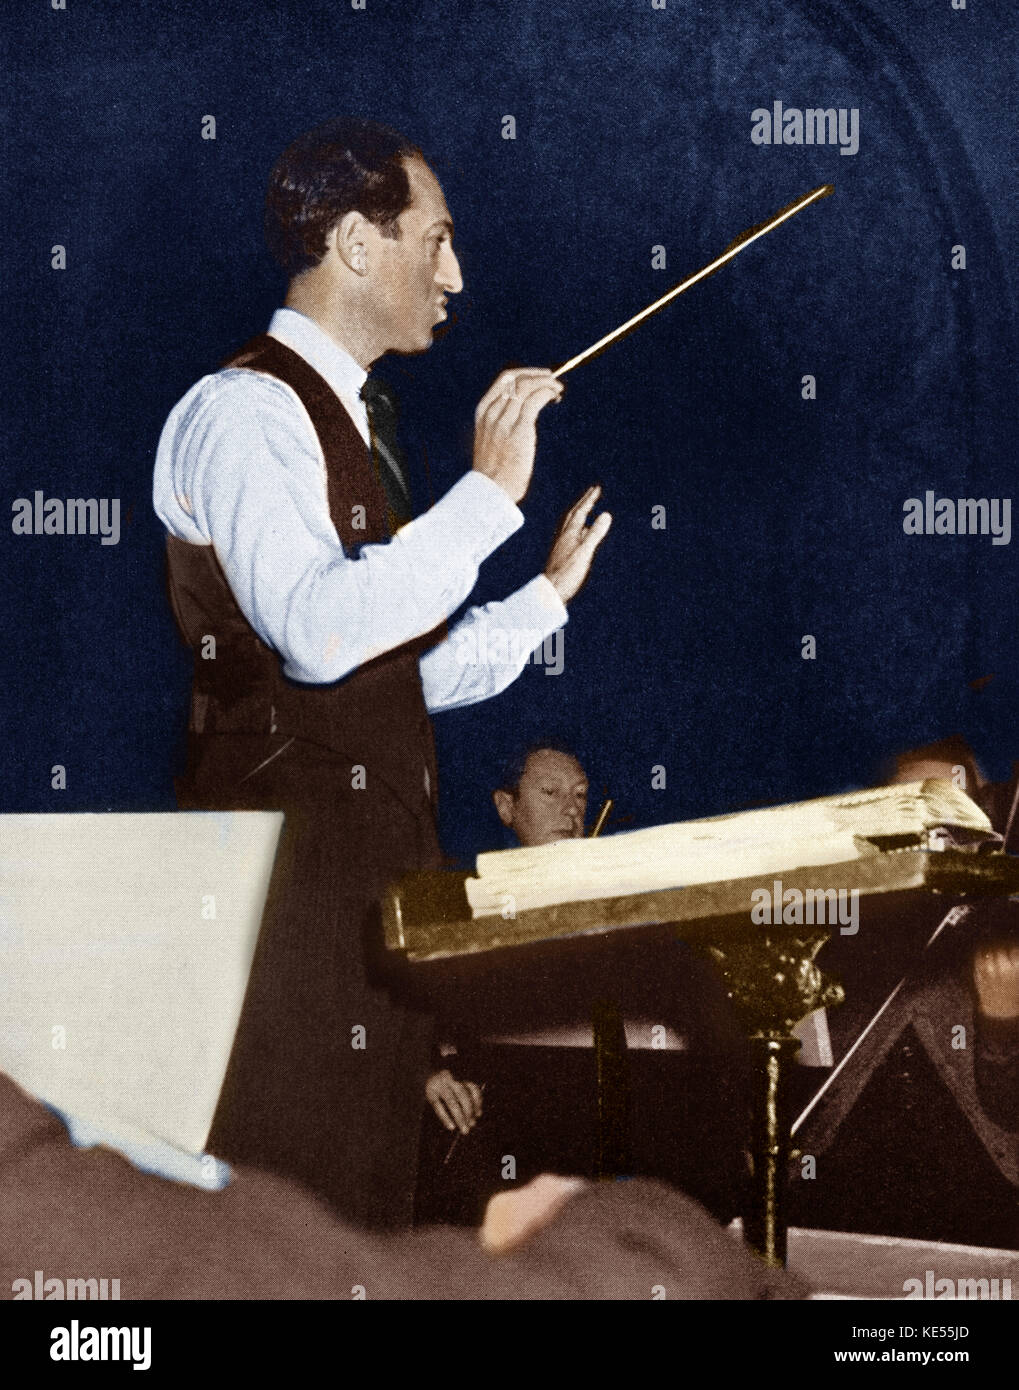 George Gershwin la realización de ensayo con orquesta. Pianista y compositor norteamericano, el 26 de septiembre de 1898 - 11 de julio de 1937. Colourised versión. Foto de stock